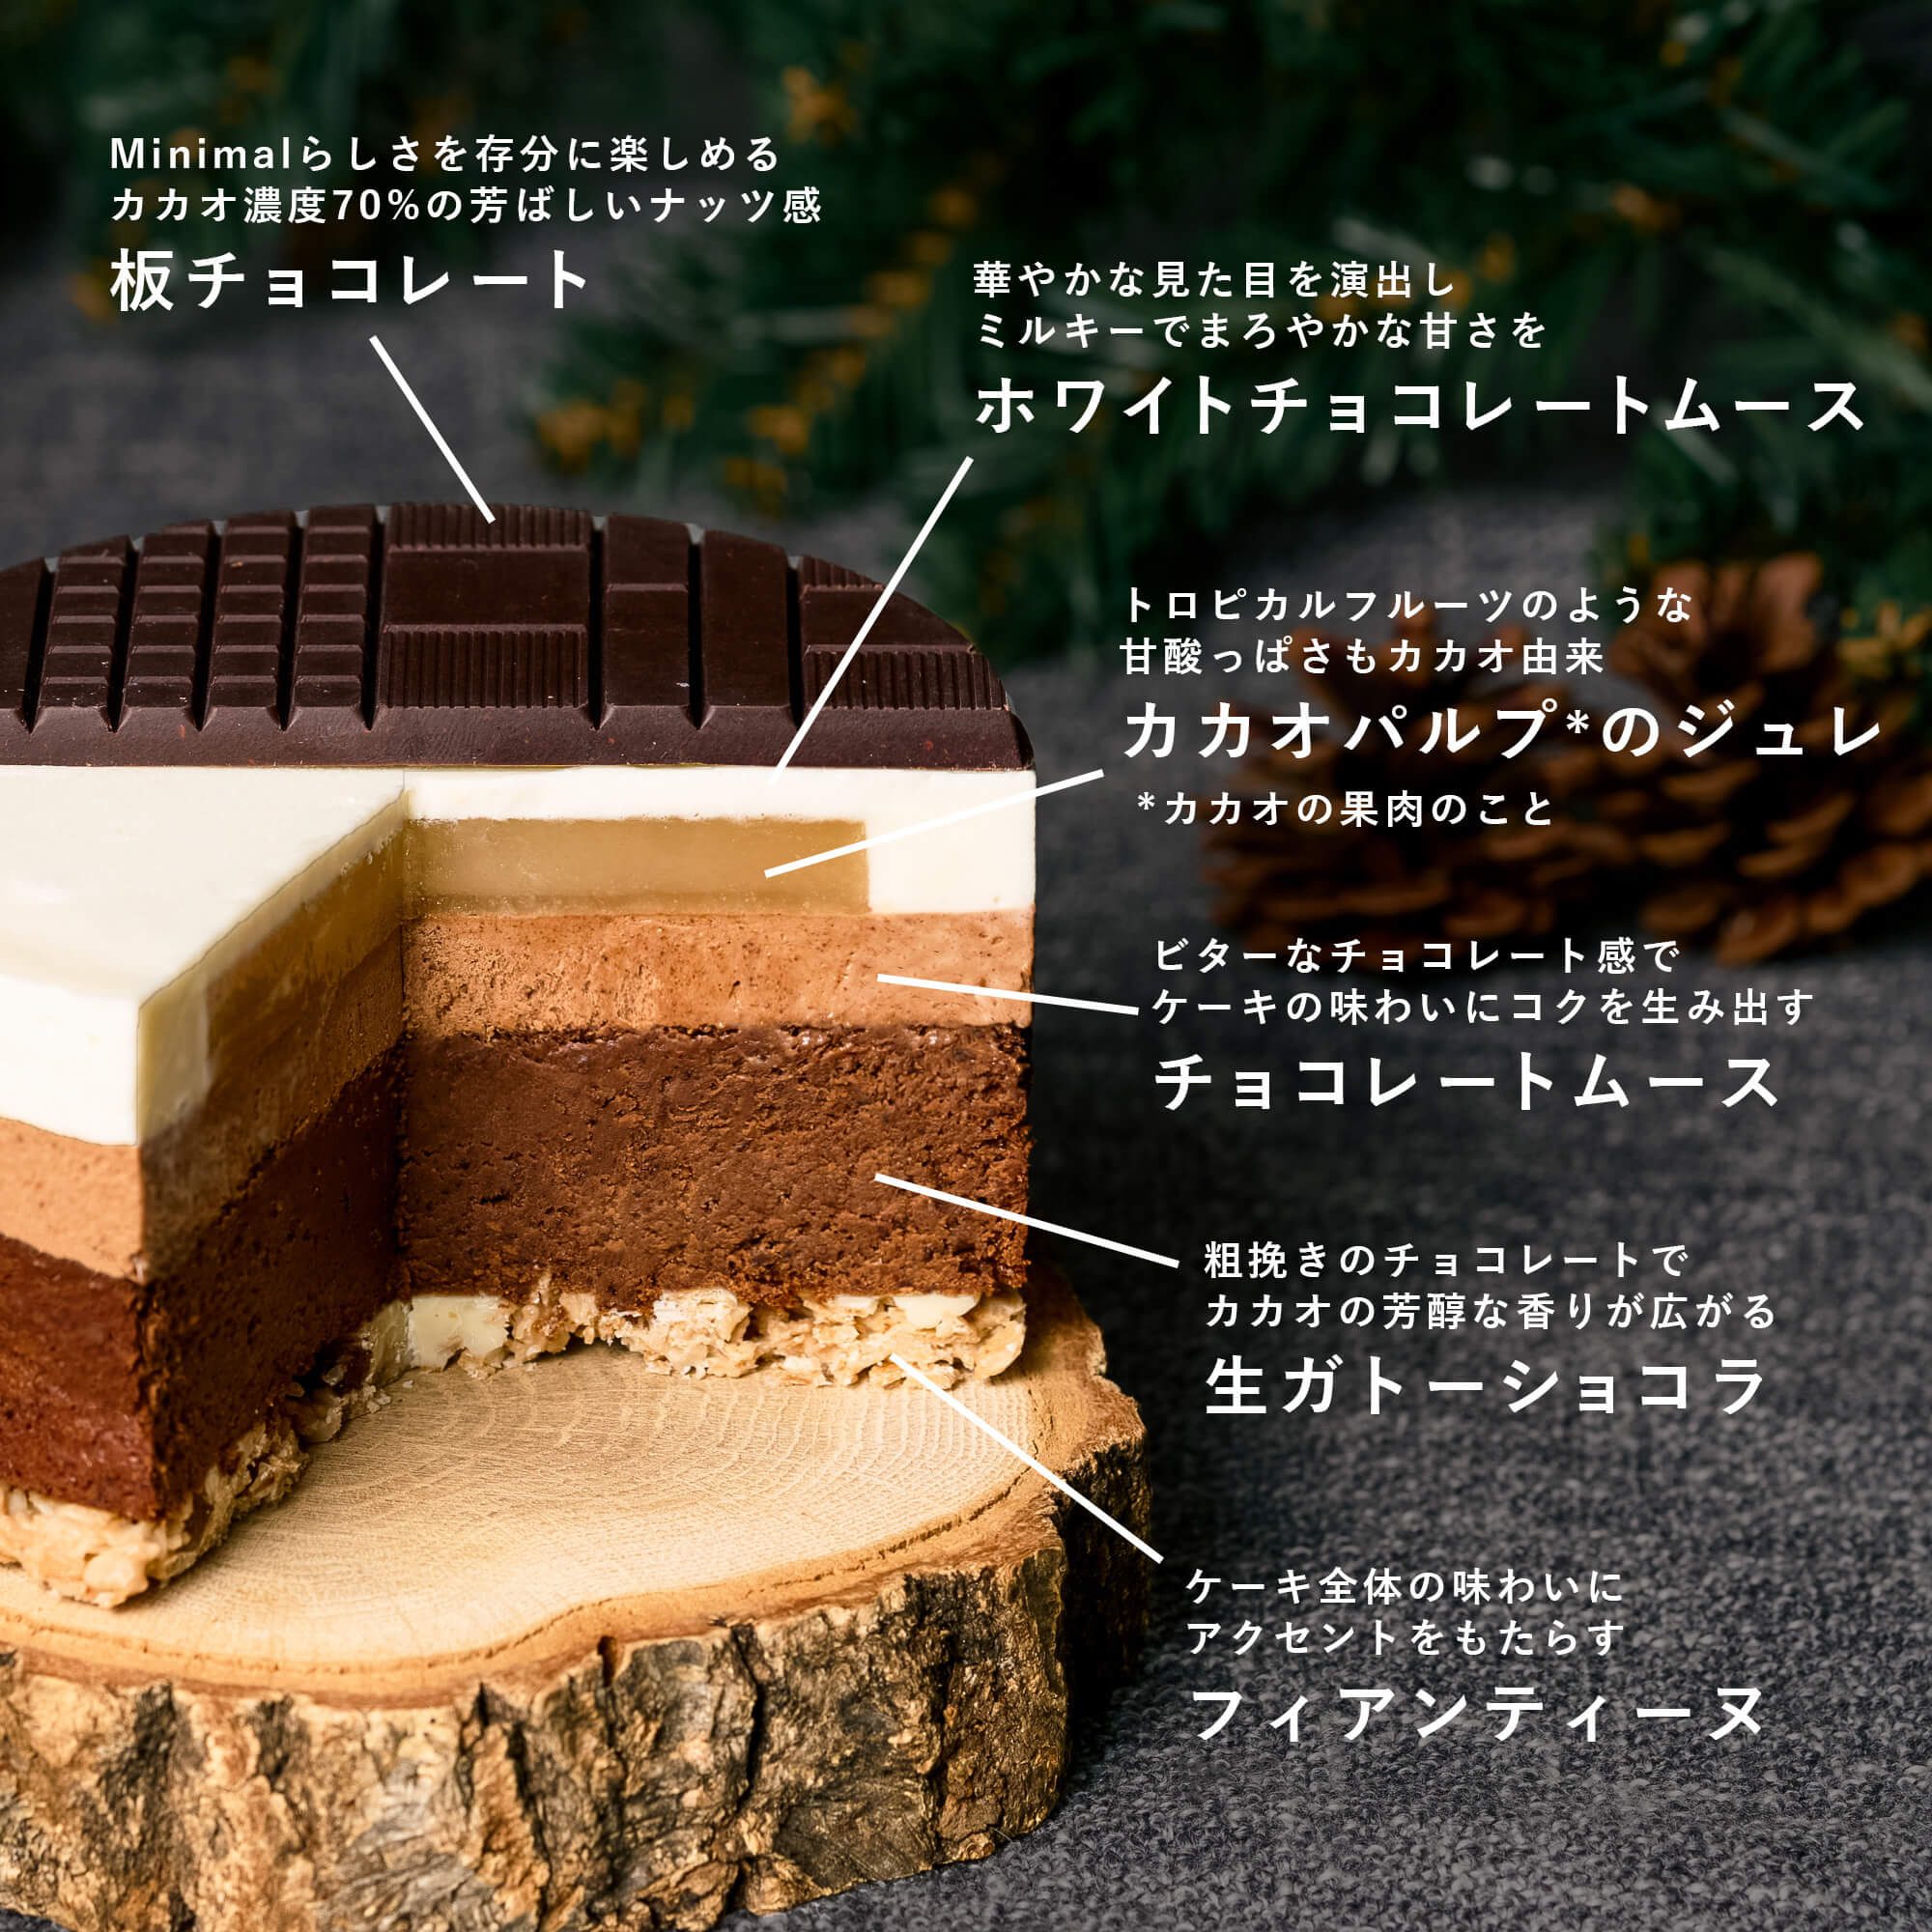 Minimal クリスマスケーキ -2023- – Minimal - Bean to Bar Chocolate -